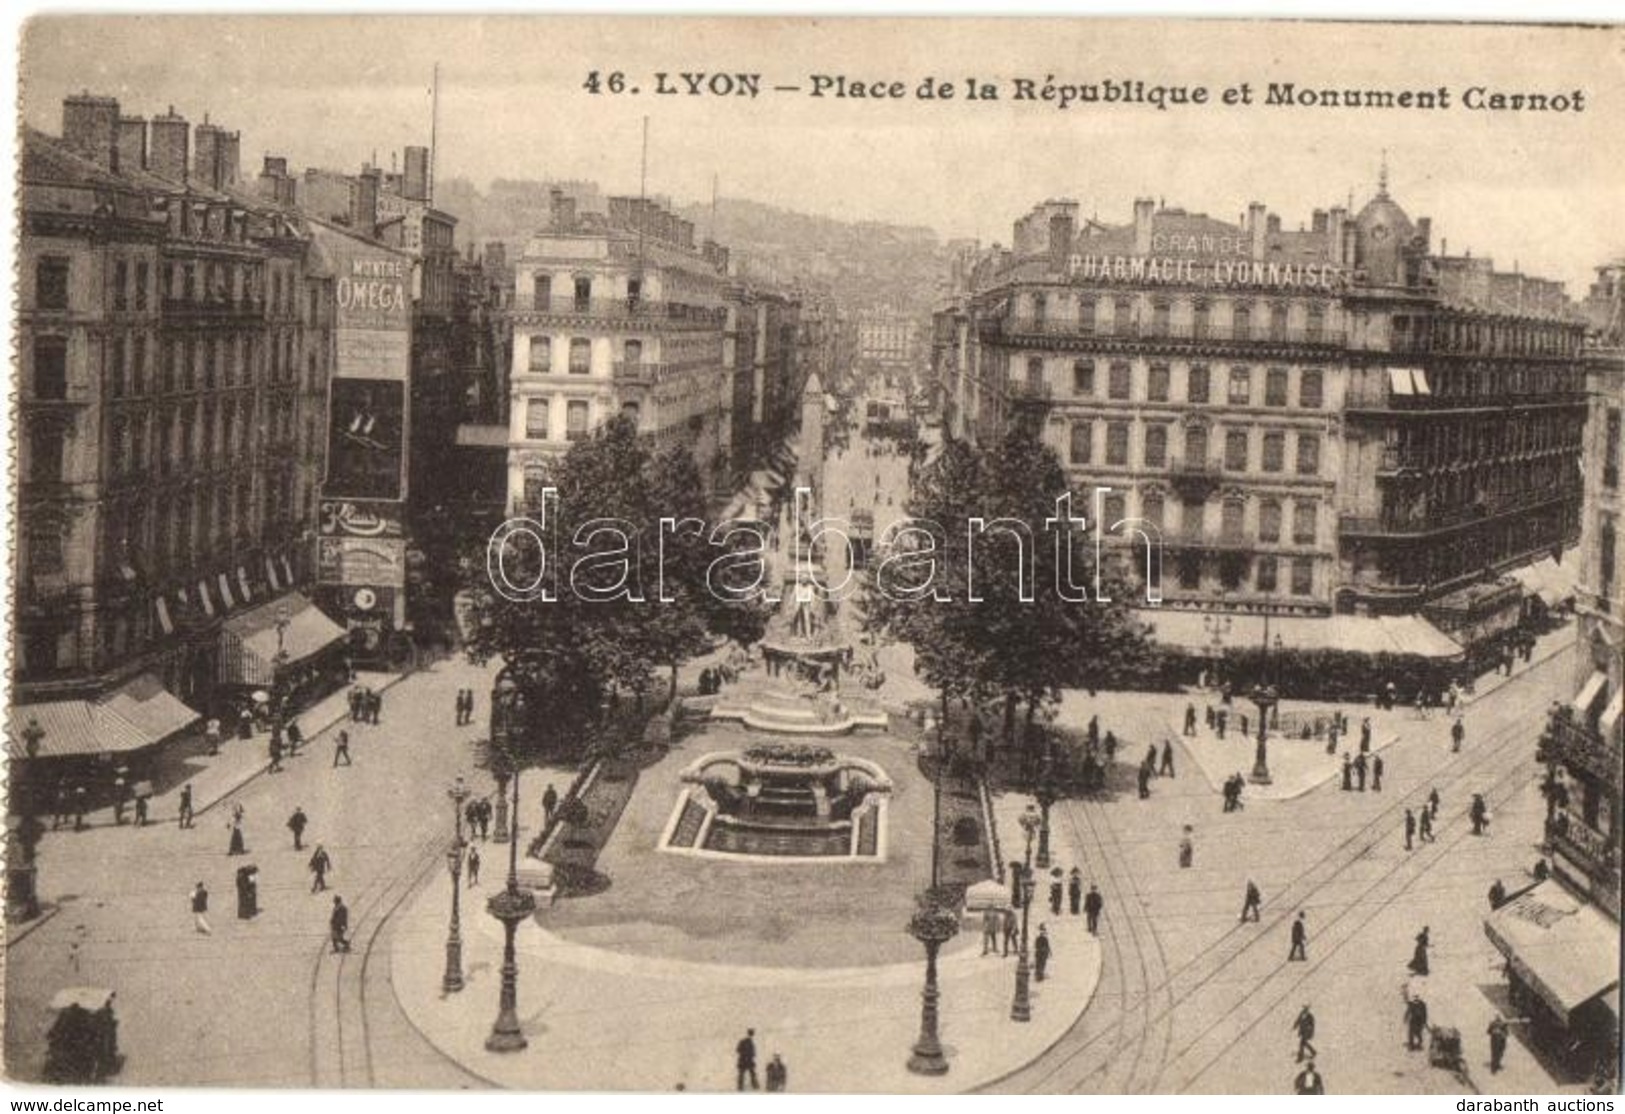 ** T2 Lyon, Place De La République, Monument Carnot / Square, Monument - Non Classés